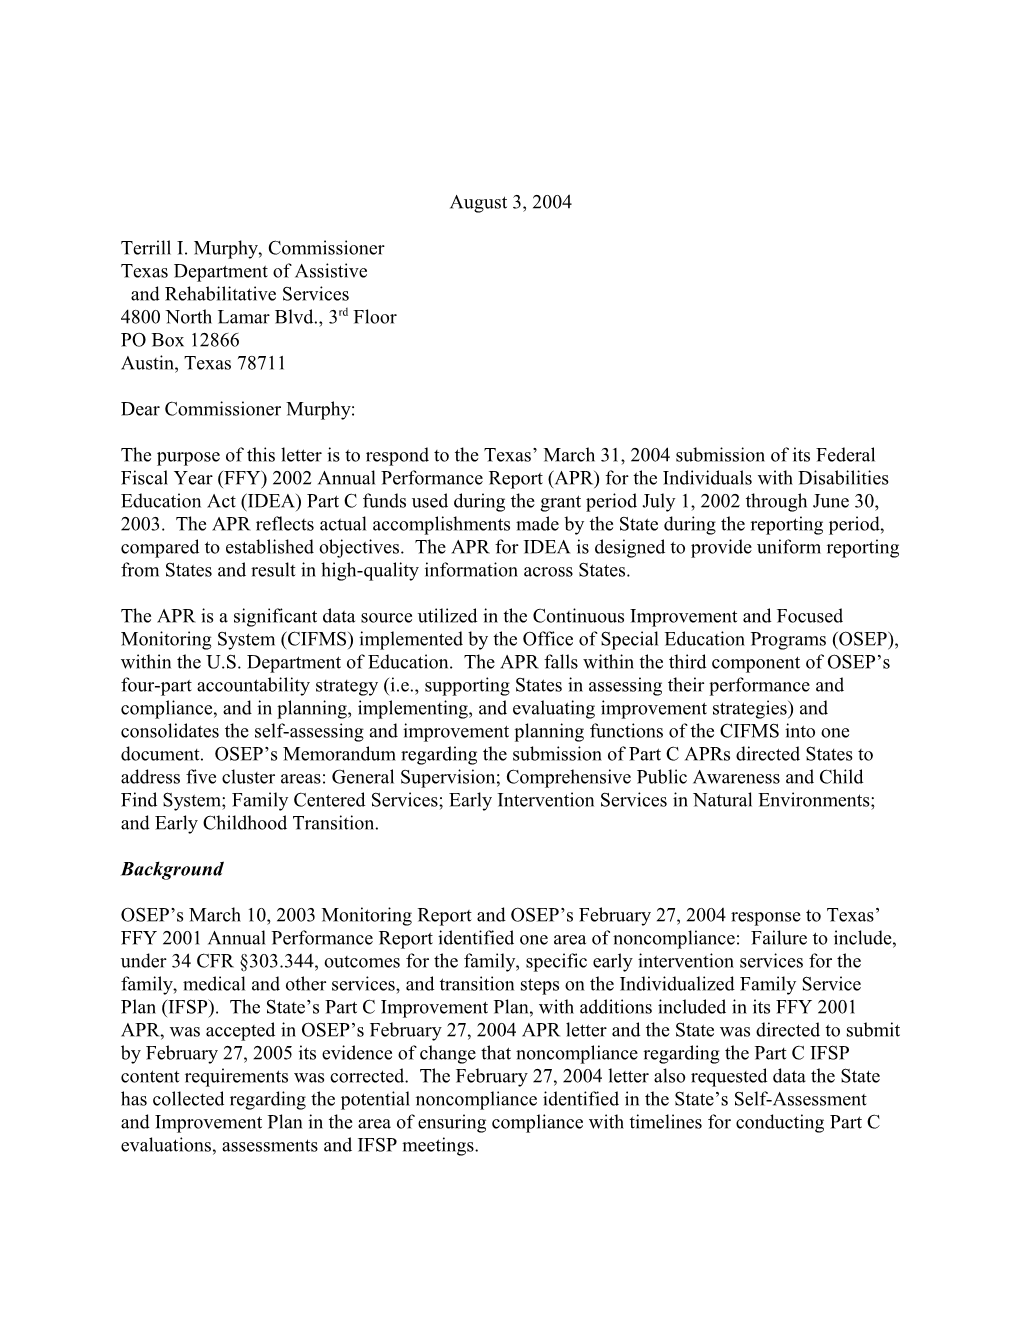 Texas Part C APR Letter, 2002-2003 (MS Word)